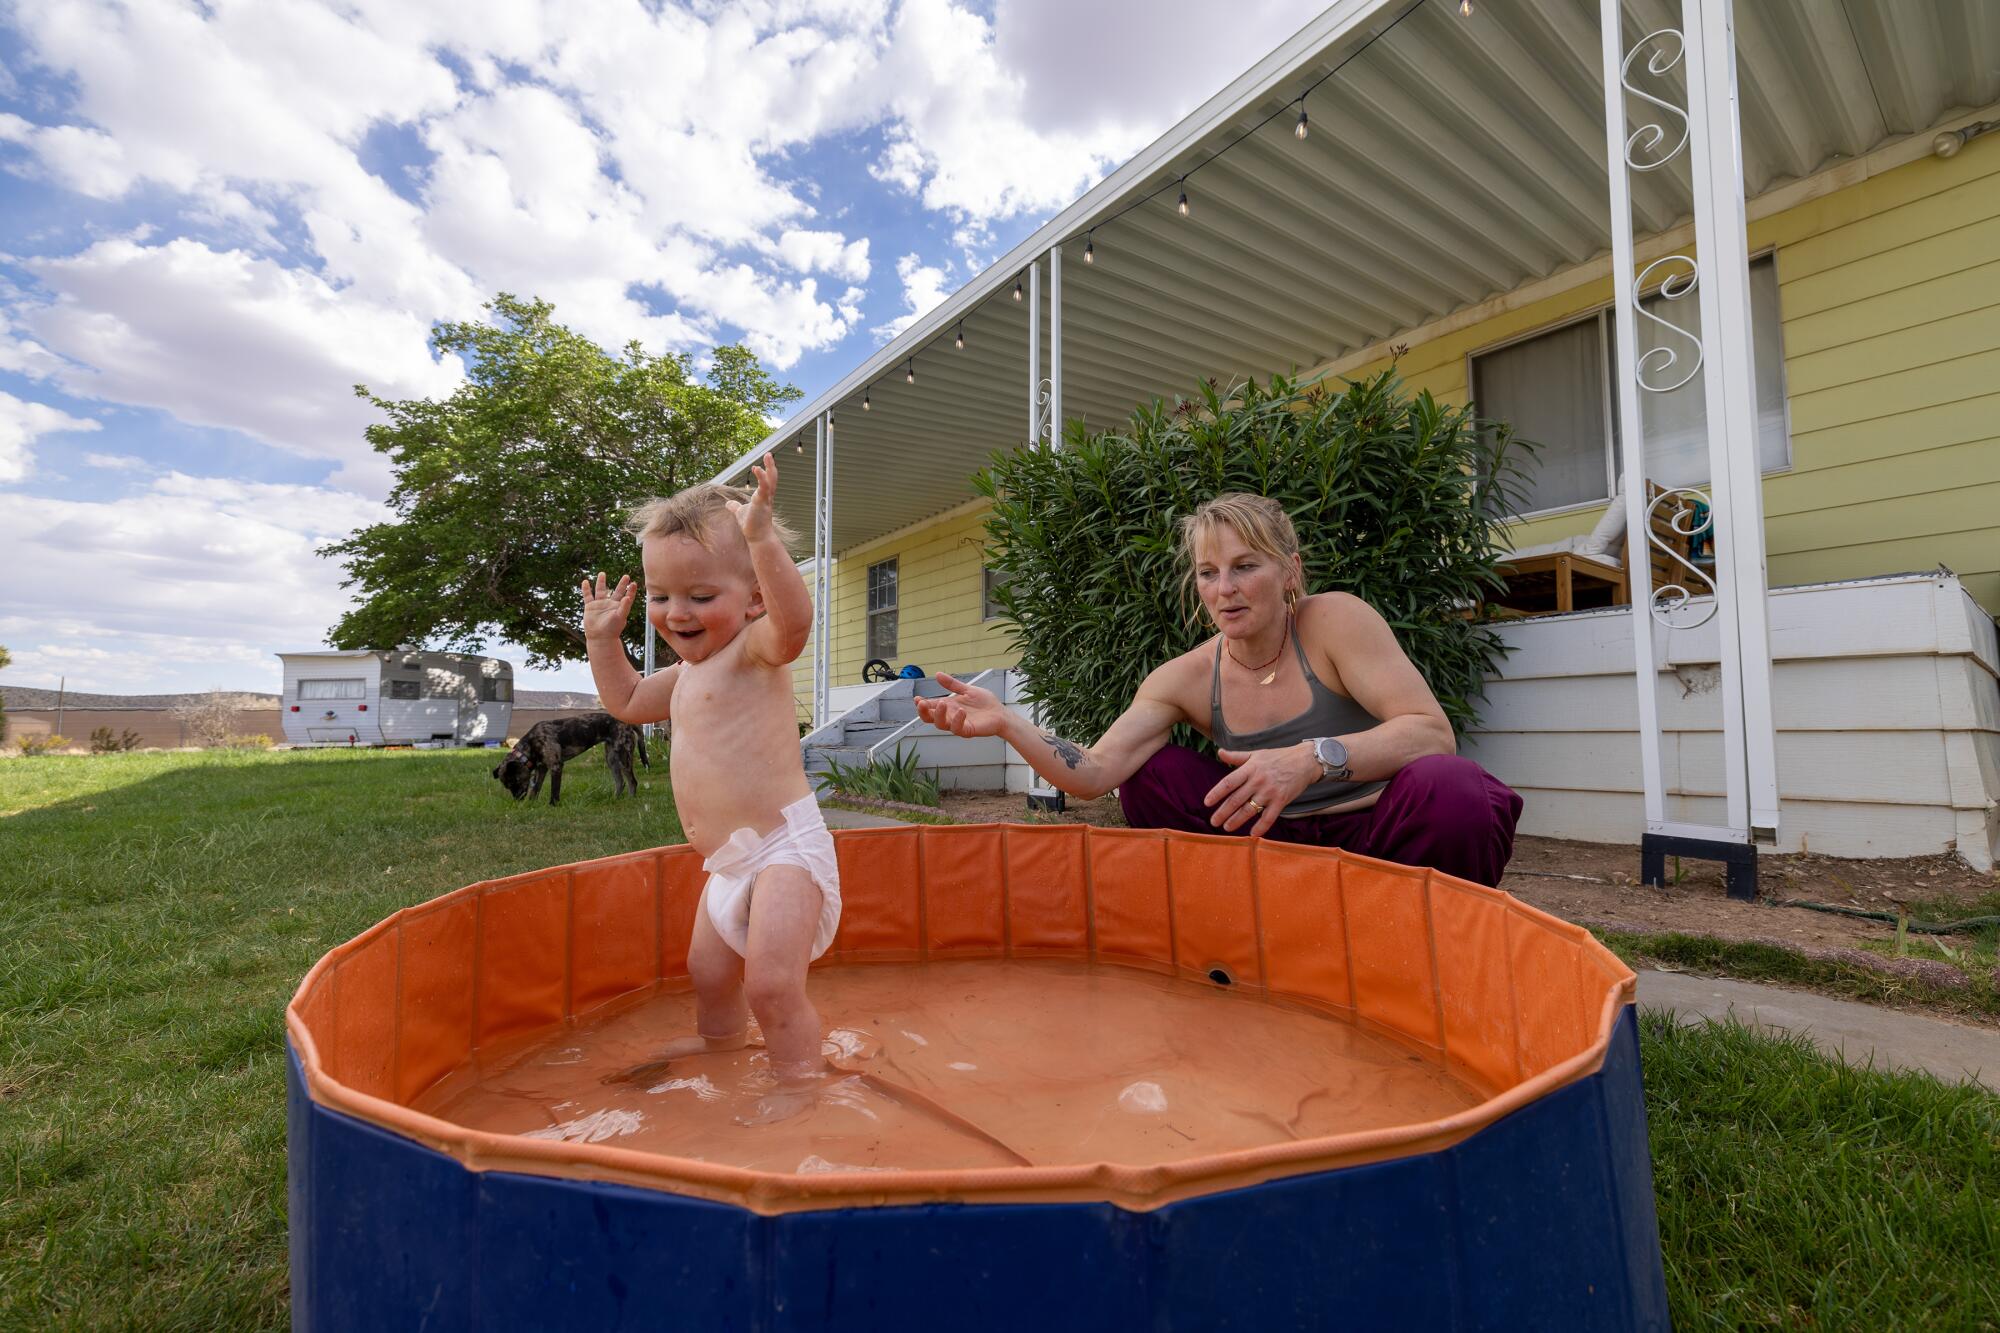 Un niño pequeño chapotea en una piscina para bebés al aire libre mientras su madre observa.  